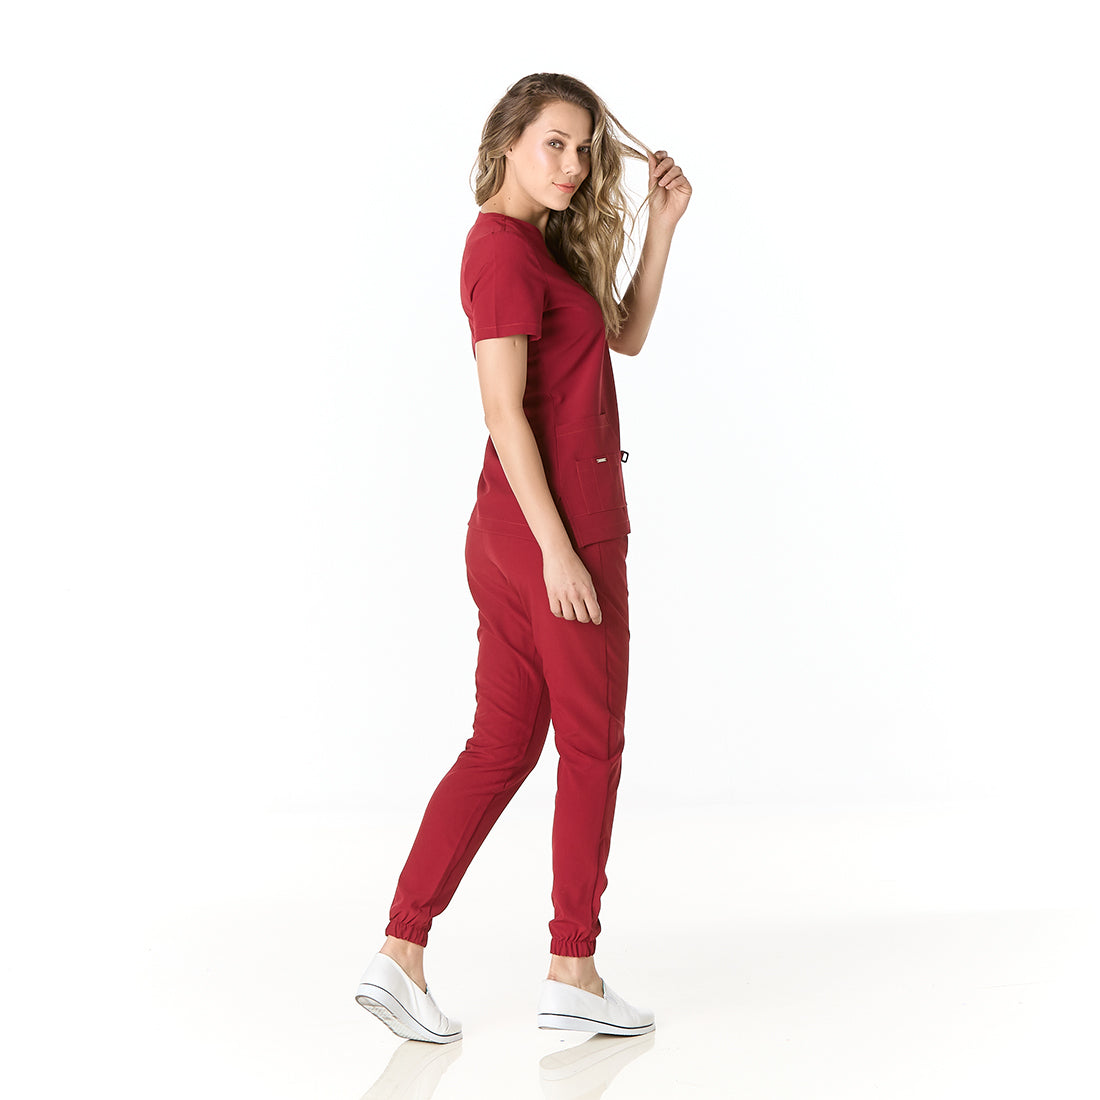 Mujer vistiendo pijama sanitario color vino con cuello en v y pantalon tipo jogger - perfil